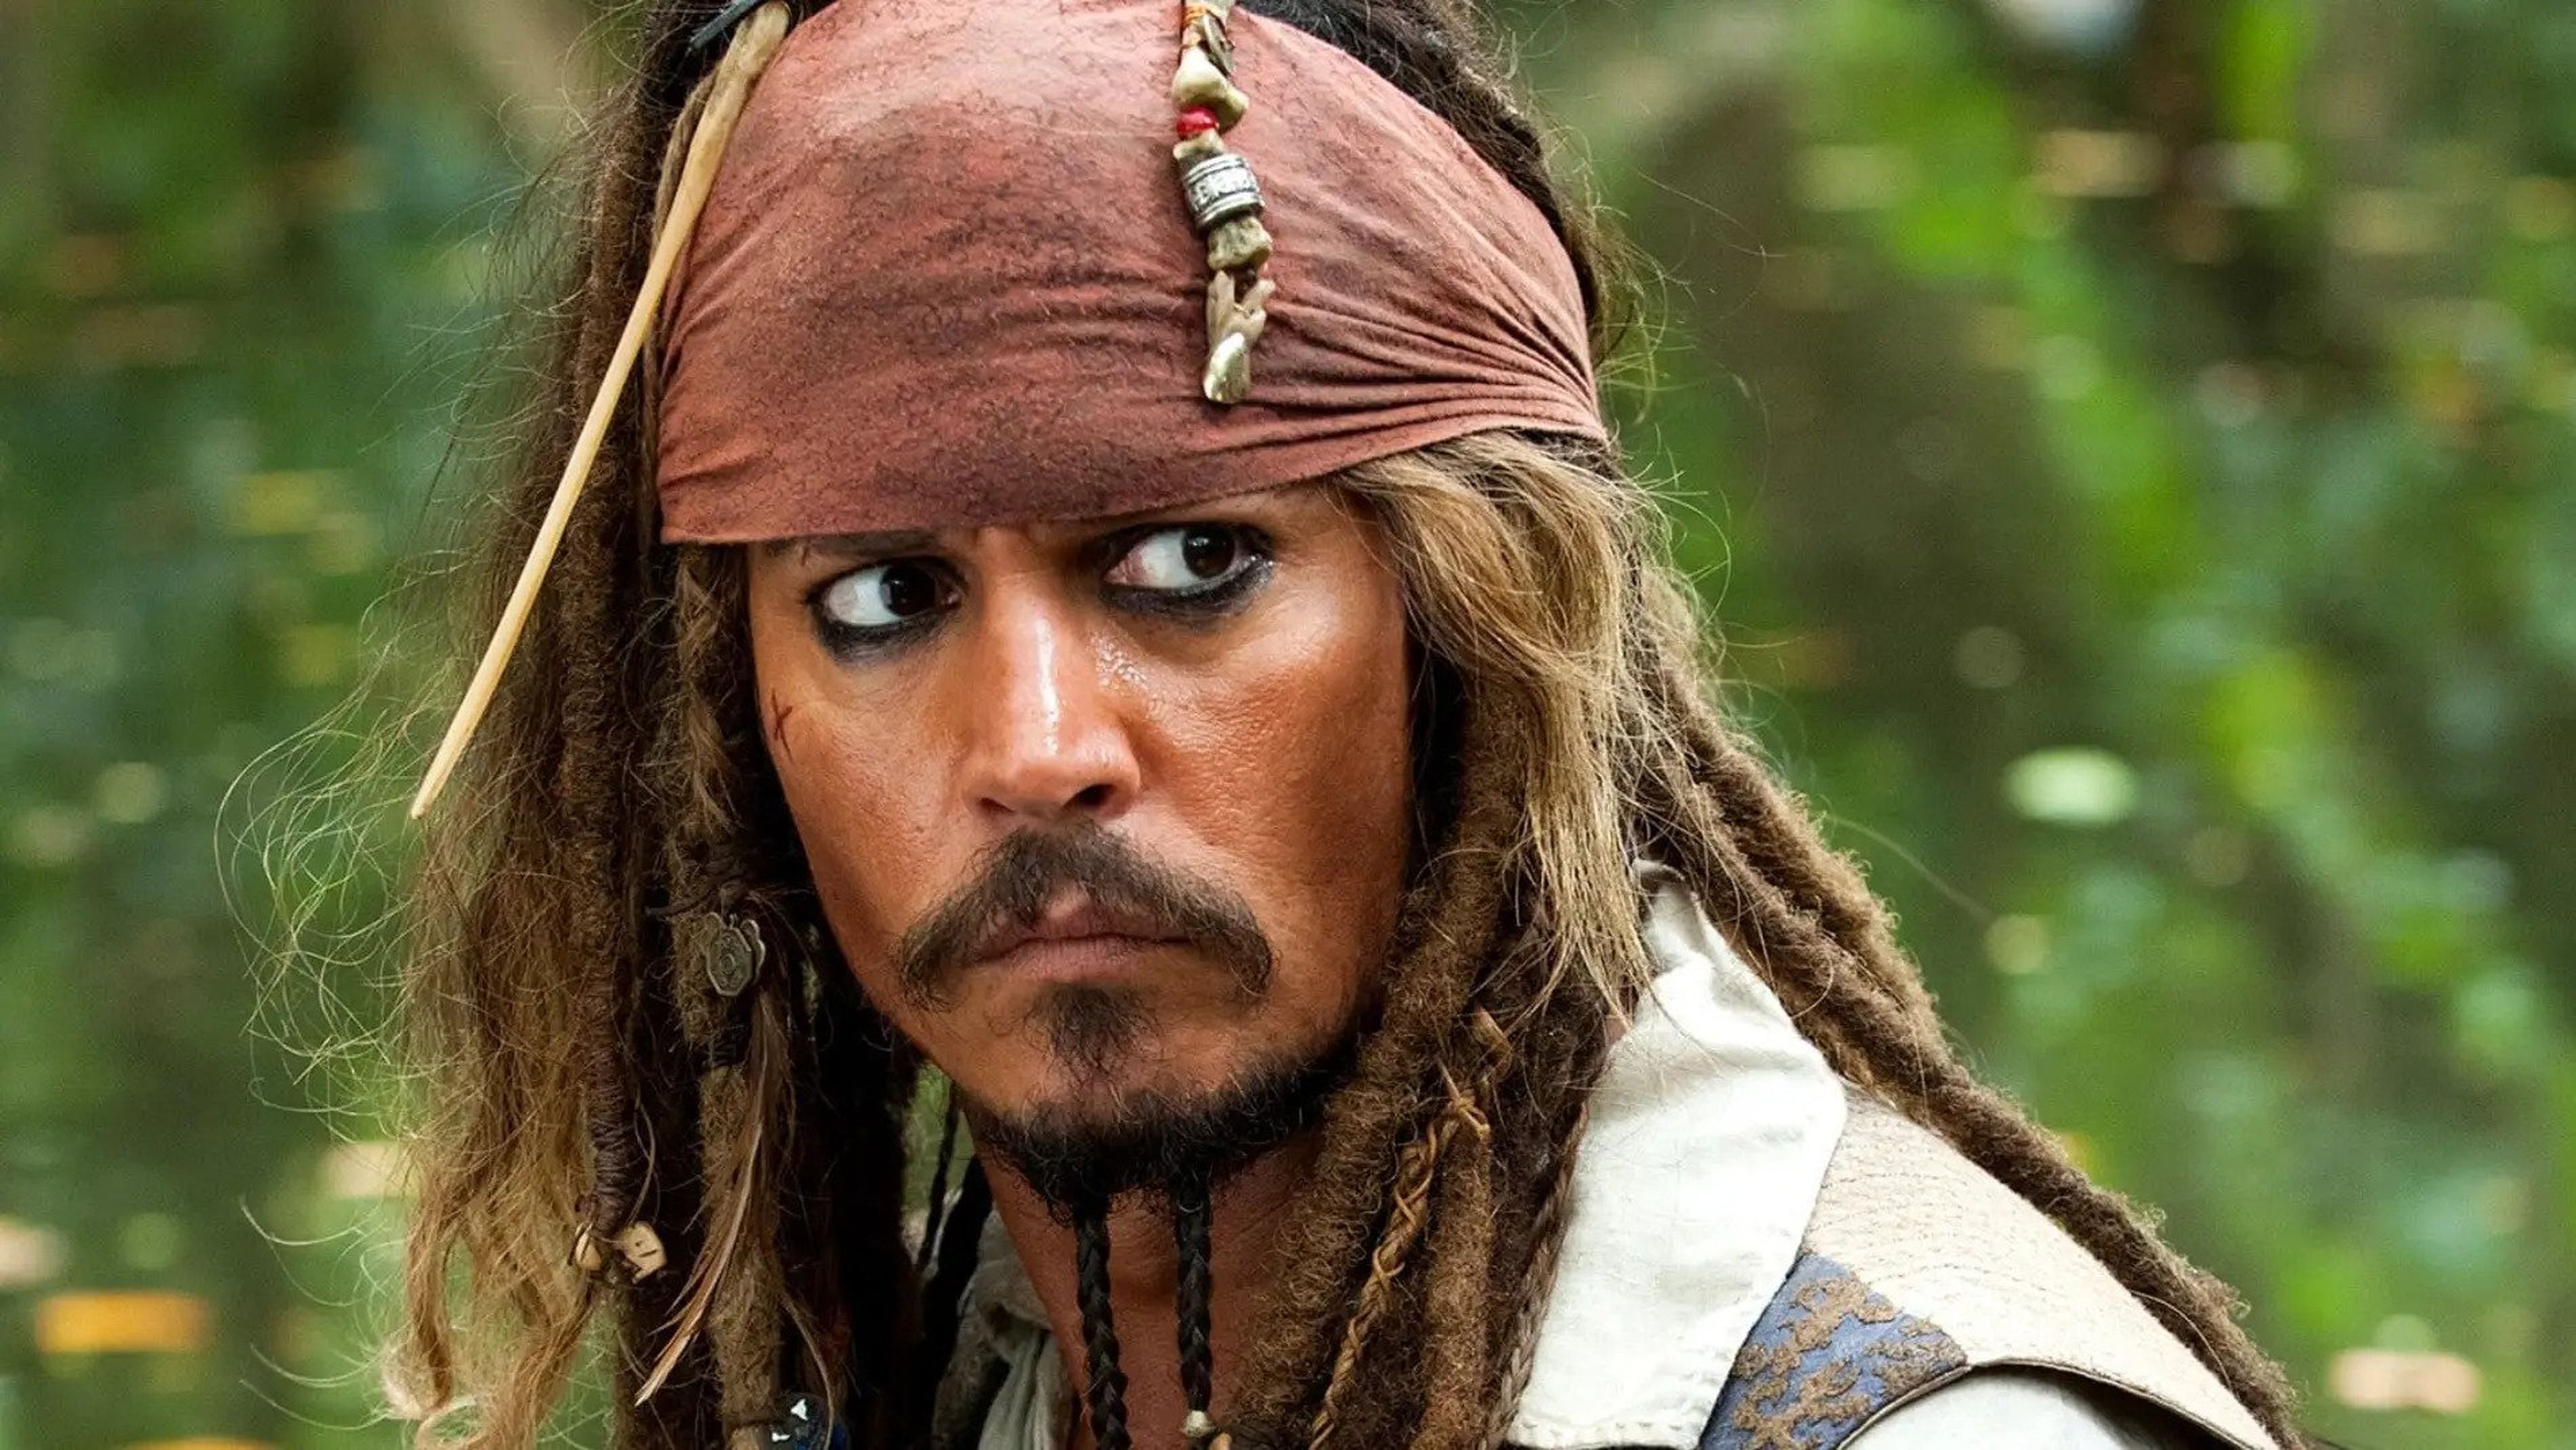 Qué cabe esperar de Piratas del Caribe 6? ¿Volverá Johnny Depp